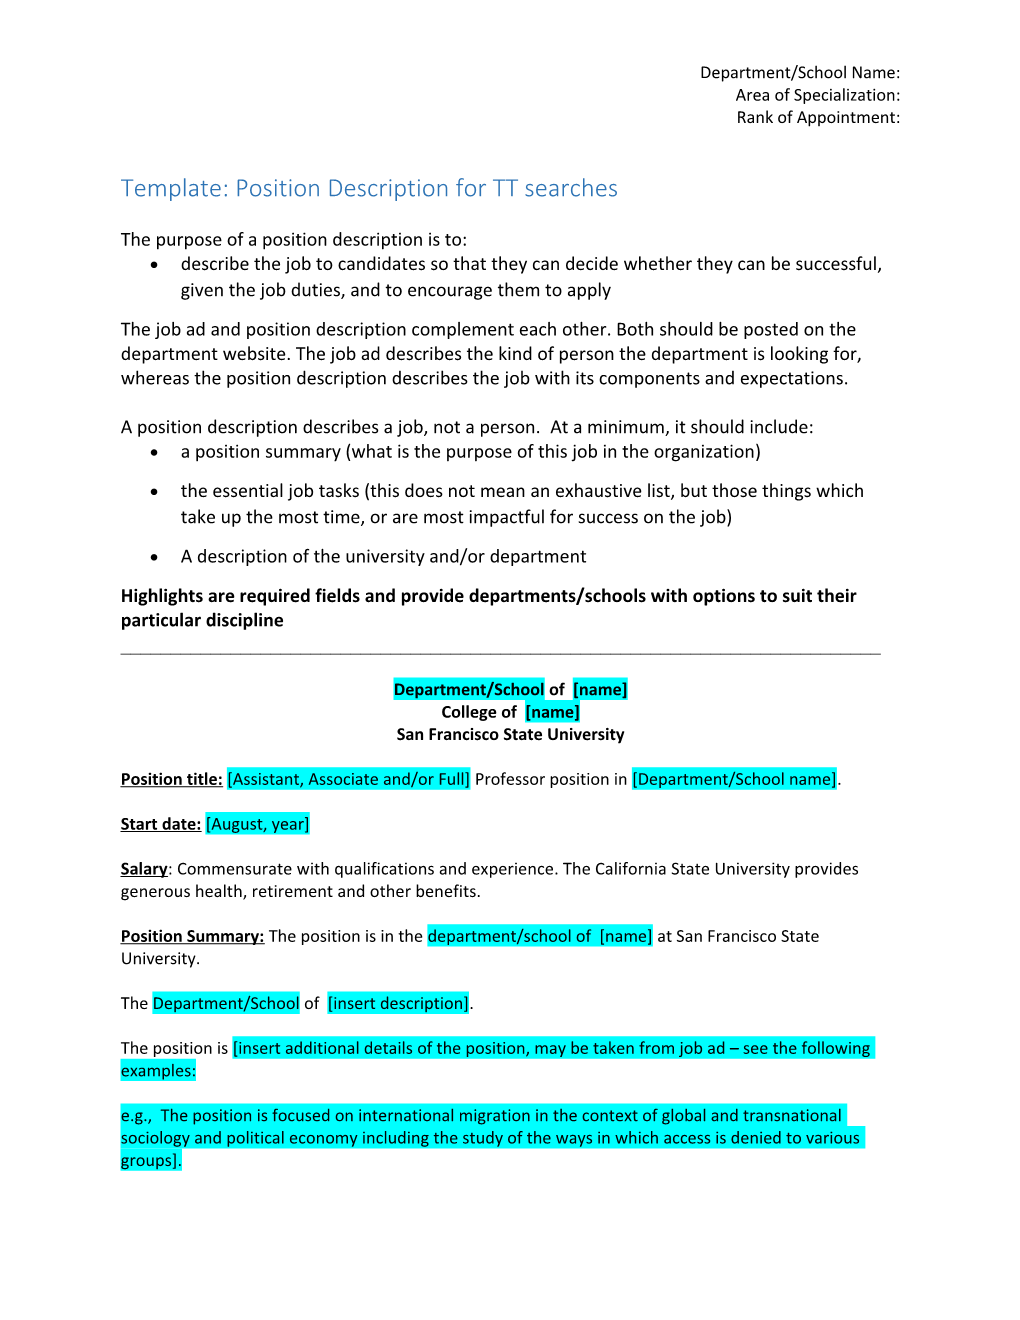 Template: Position Description for TT Searches